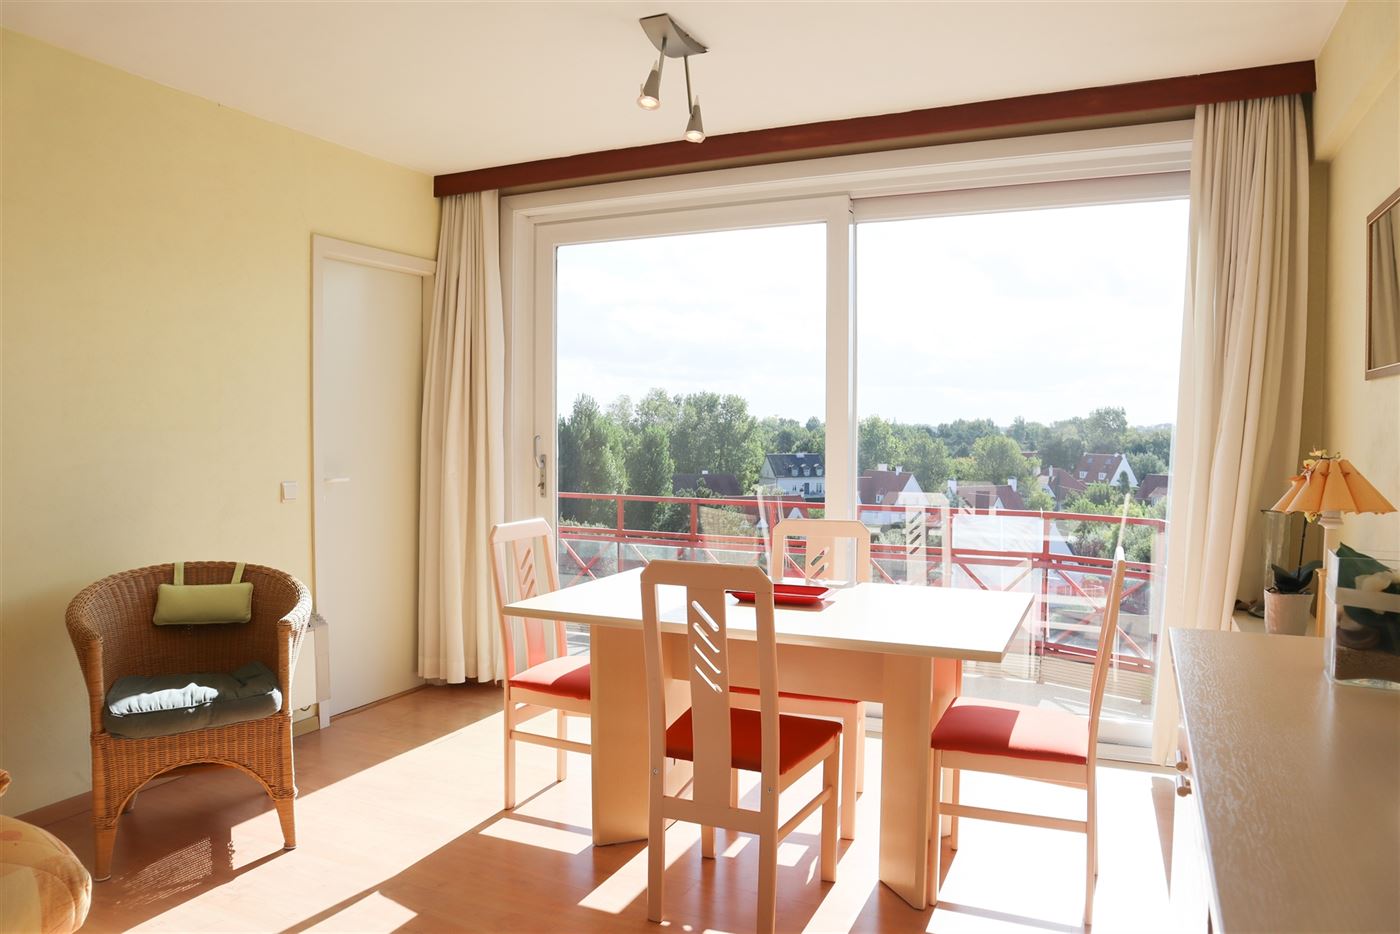 Res. Panorama A504 - Zonnig appartement met slaapkamer - Fantastisch open zicht op de Simli vanop de vijfde verdieping - Leefruimte - Open keuken - Ba...